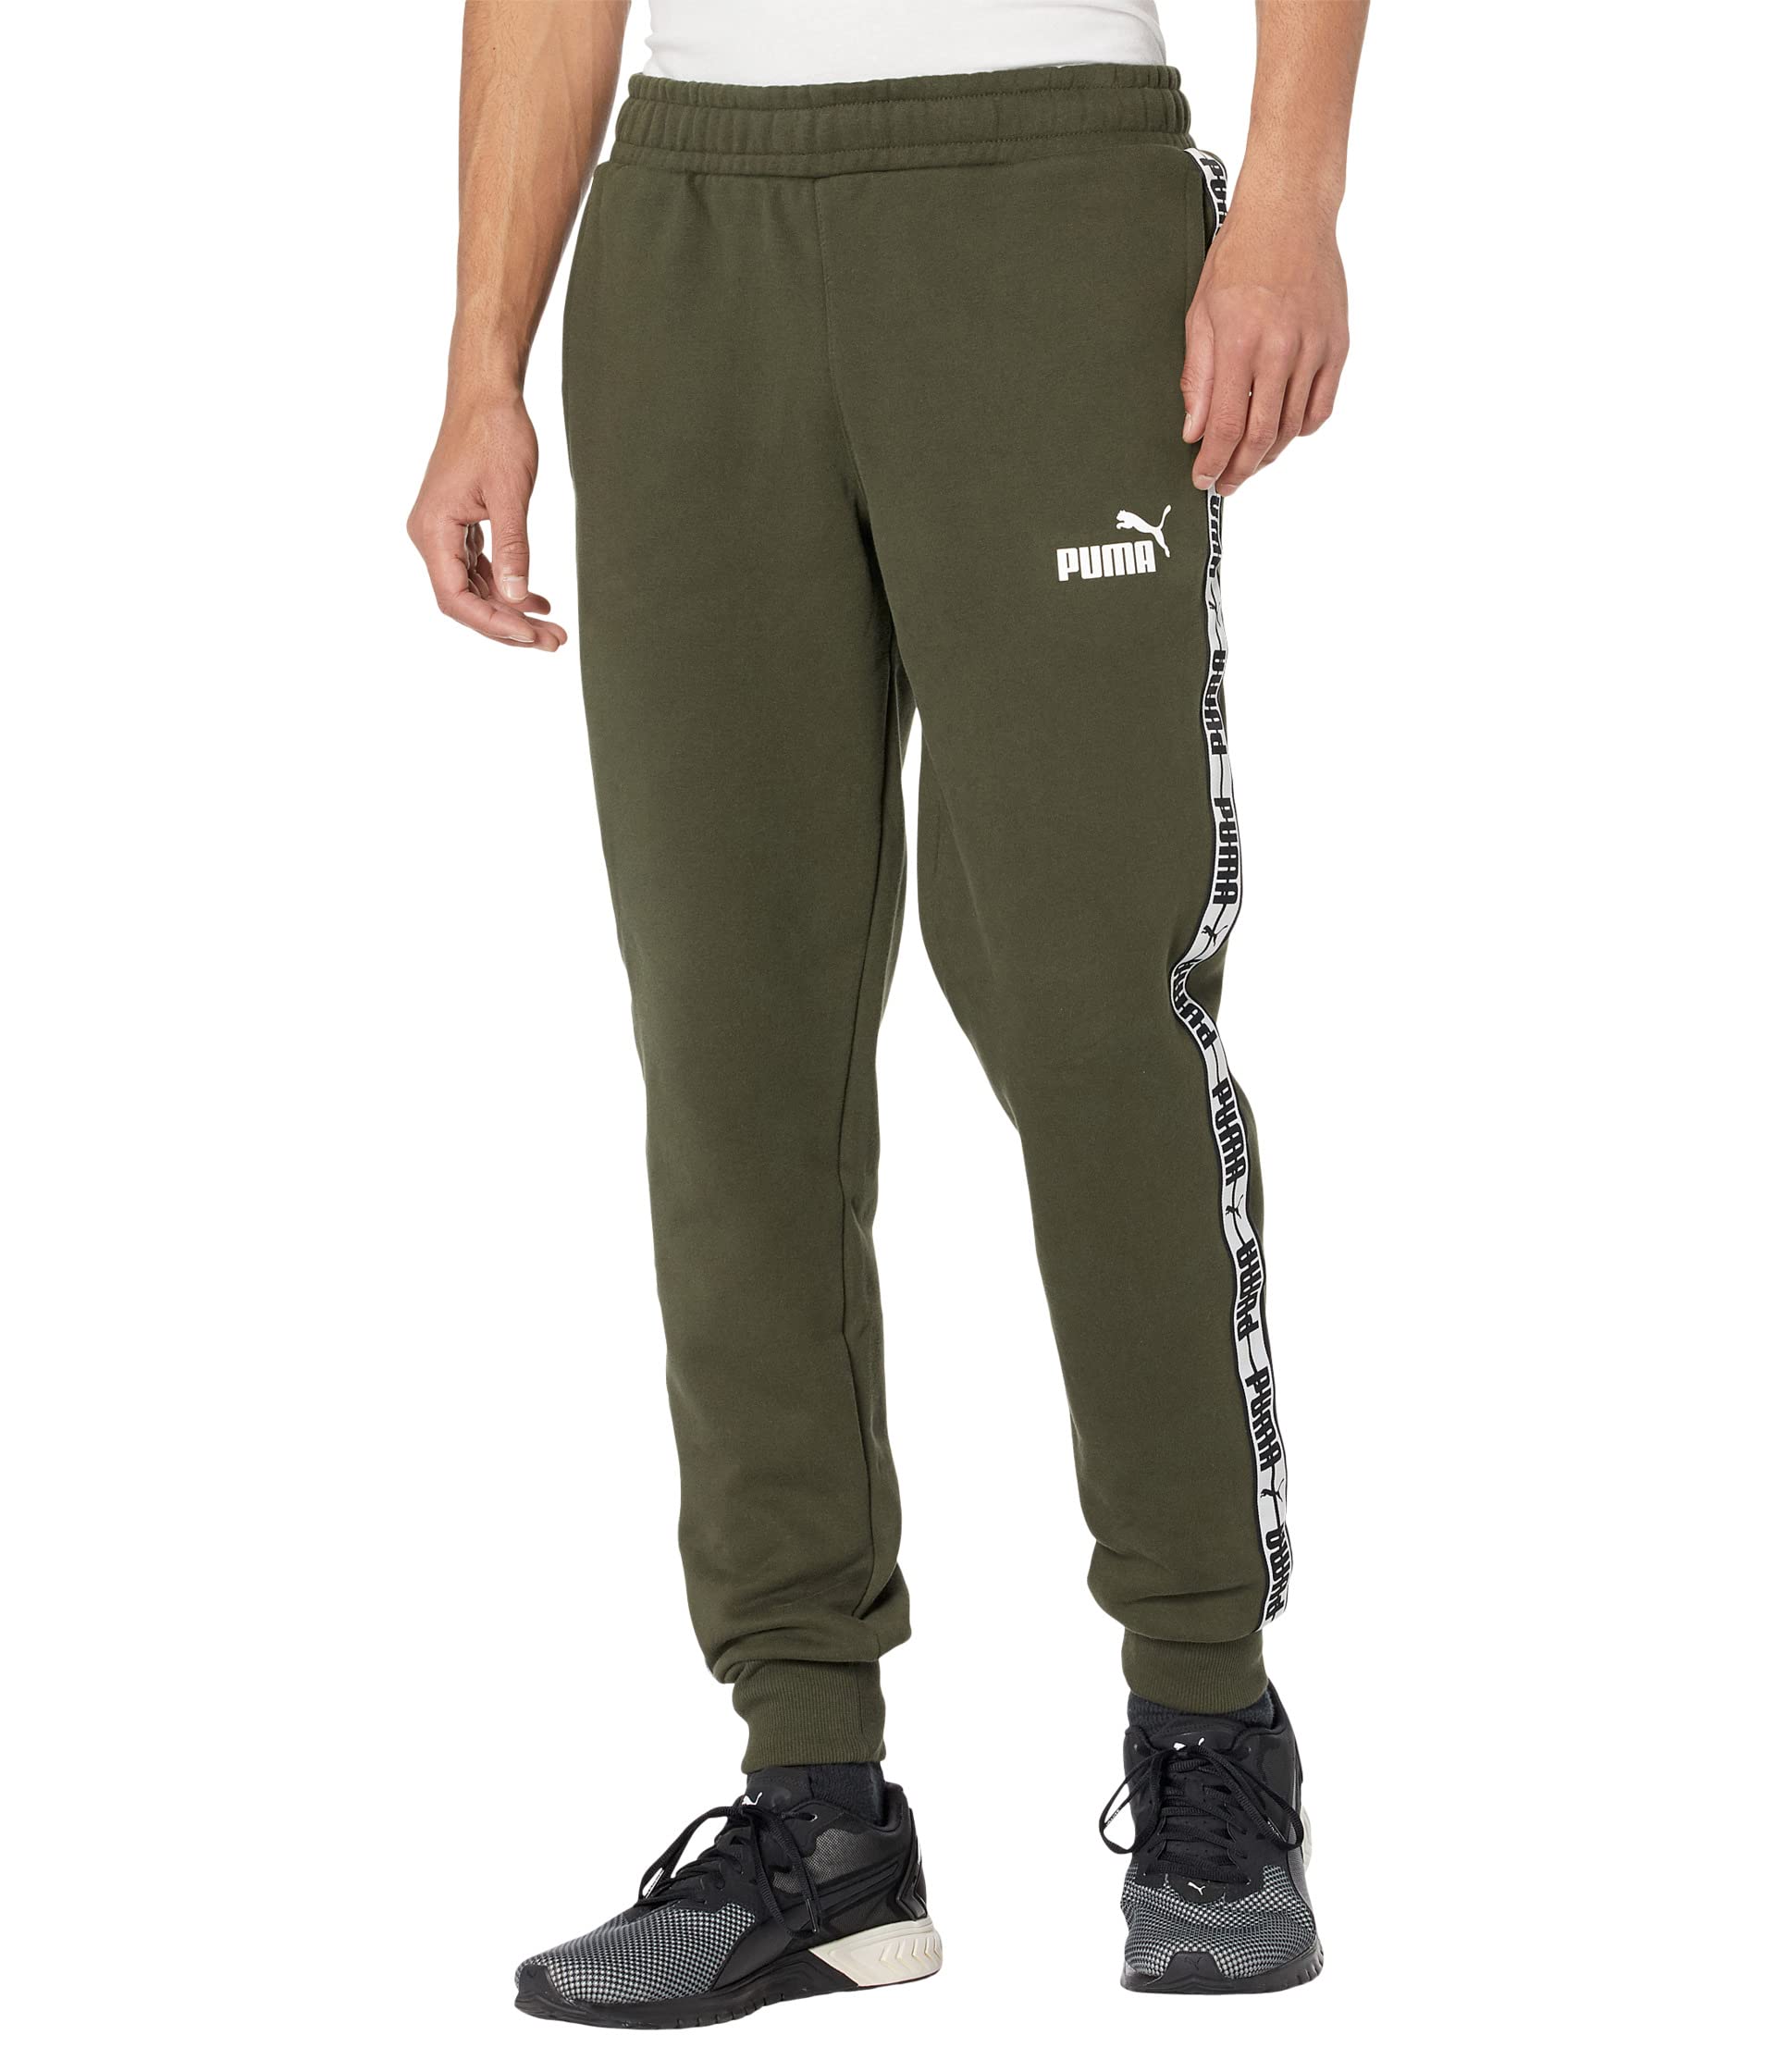 Мужские брюки спортивные Puma Taping Pants Fleece, зеленый кроссовки puma smash buck unisex puma black forest night